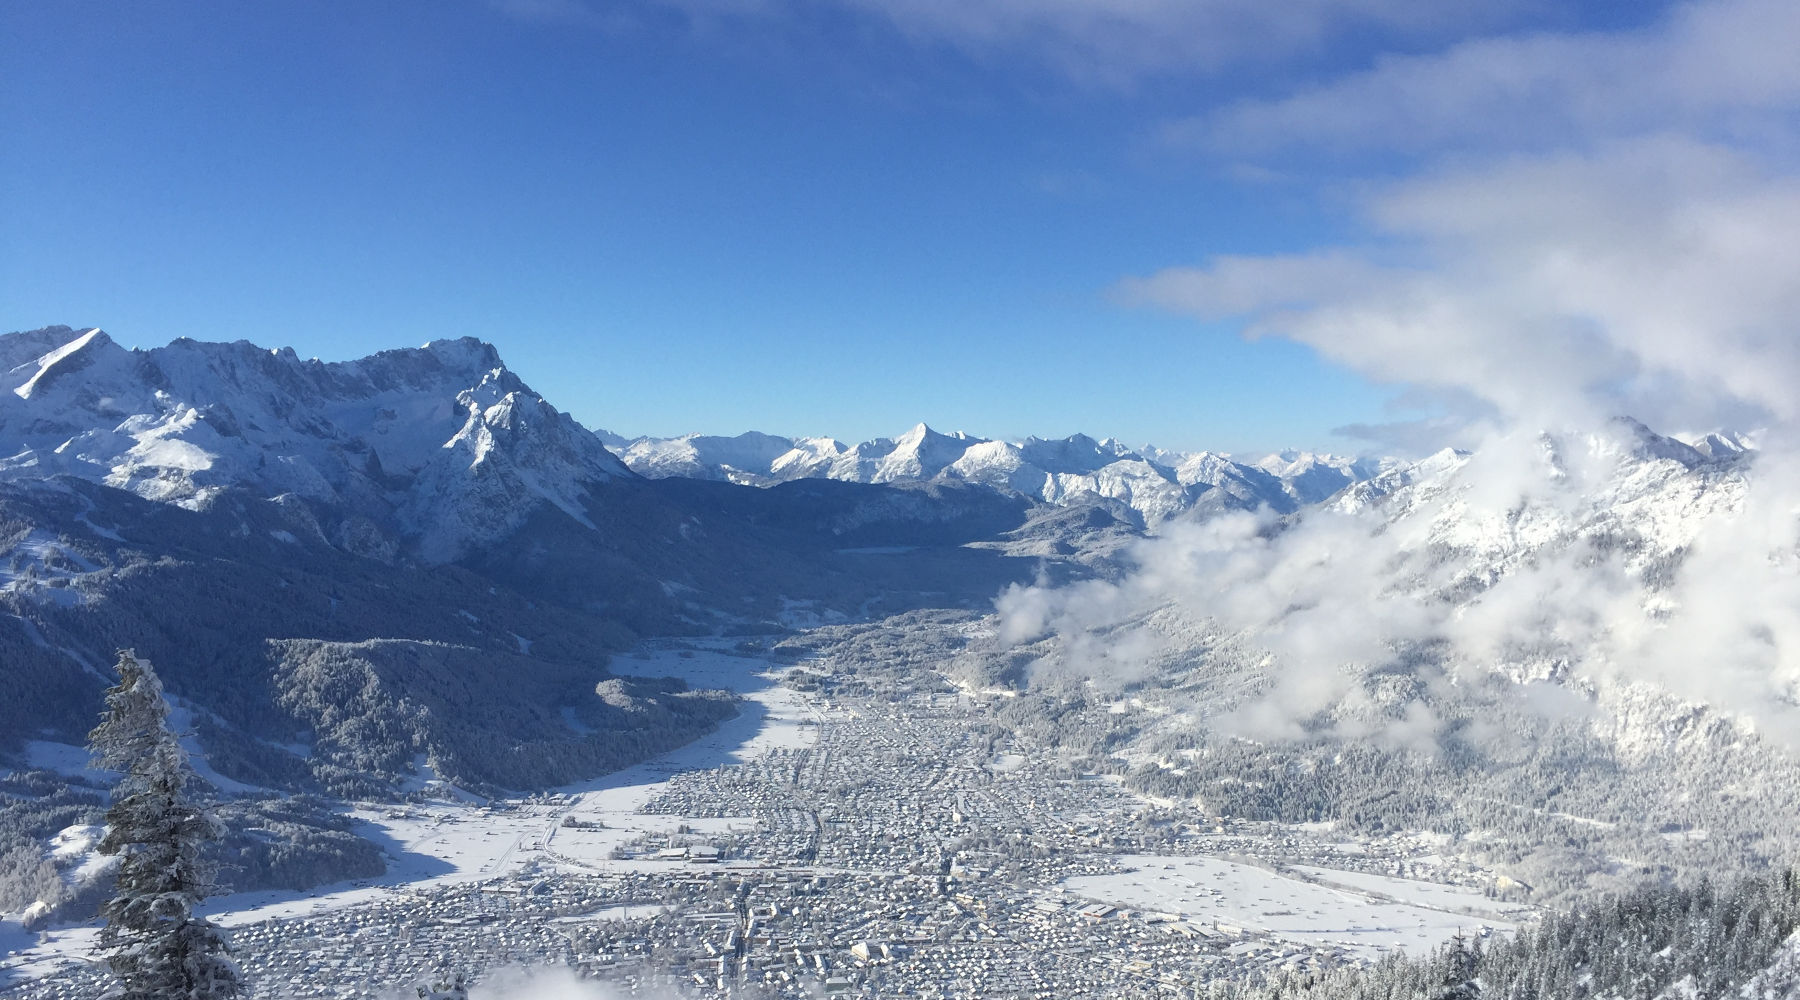 Badersee Blog: Ski Tour To Mount Wank